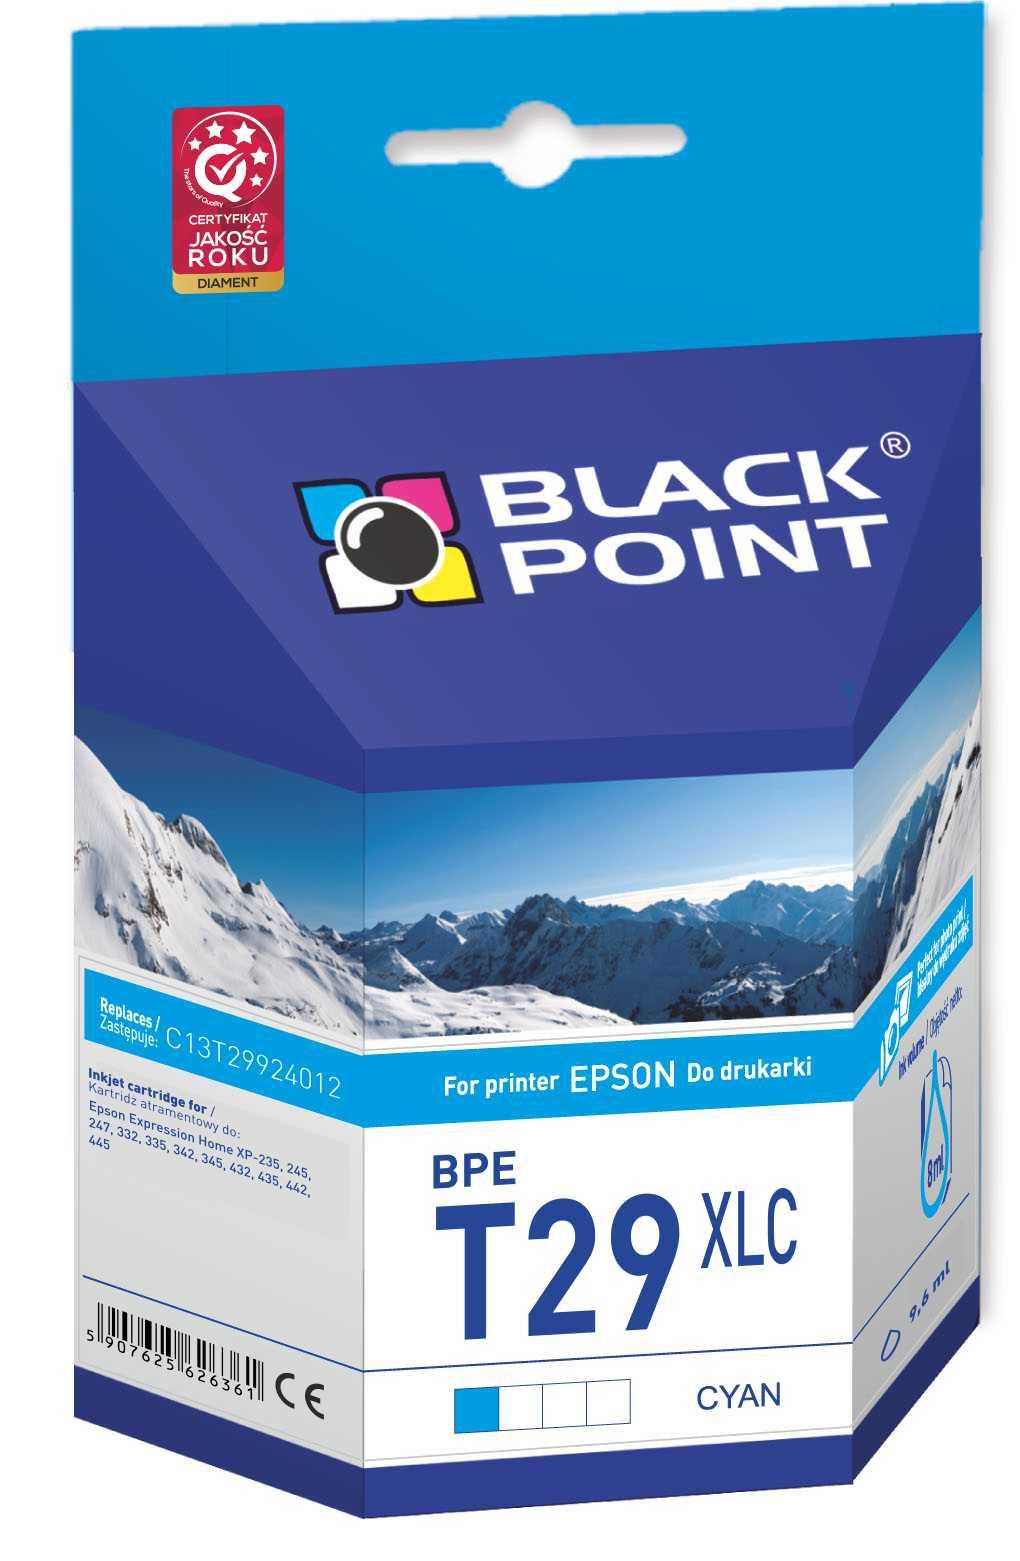 CMYK - Black Point tusz BPET29XLC zastpuje Epson C13T29924012, cyan
